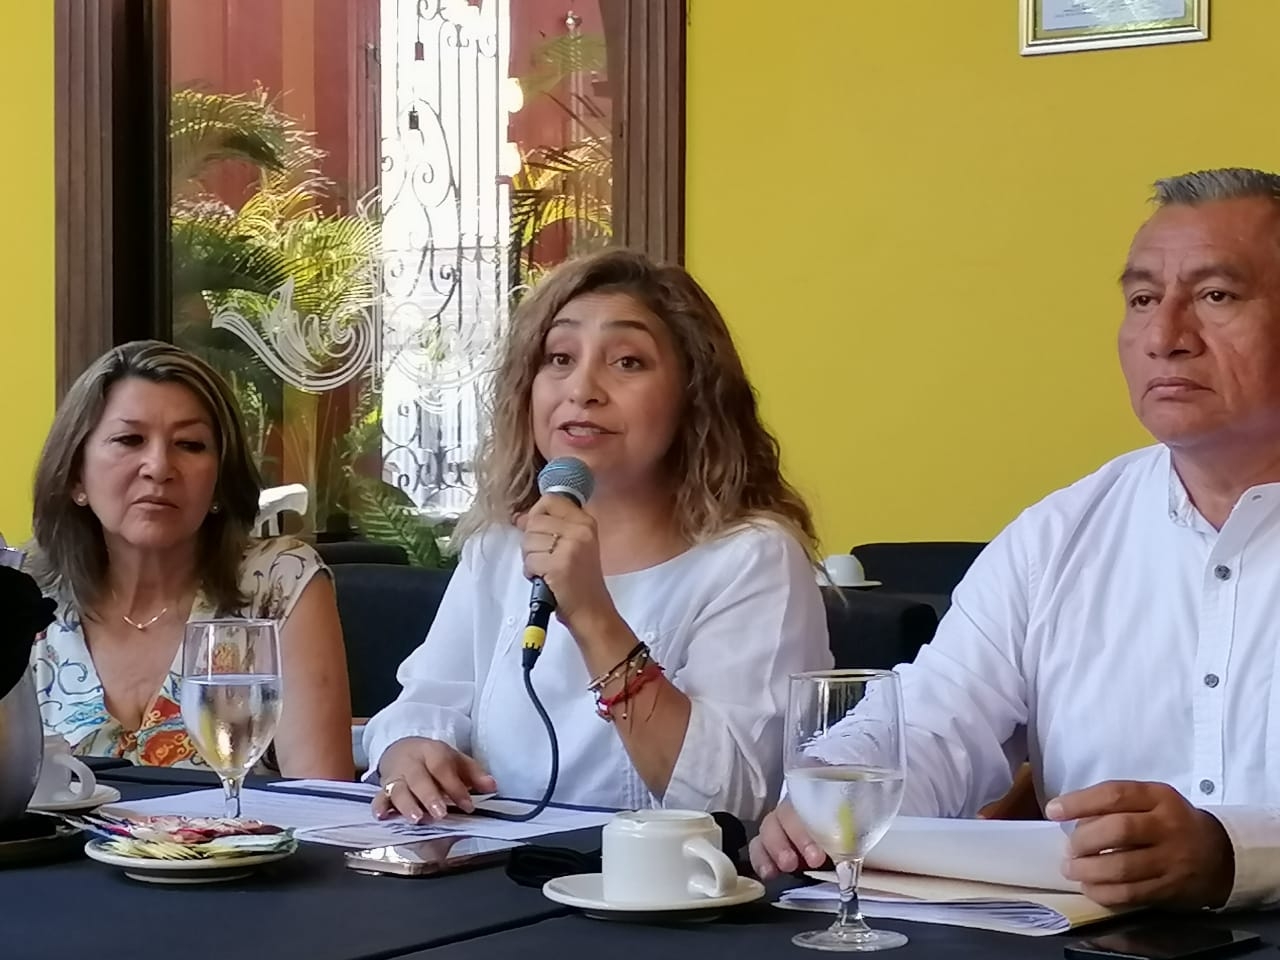 ¡Justicia para Iker! Activistas en Mérida se unen contra la explotación infantil